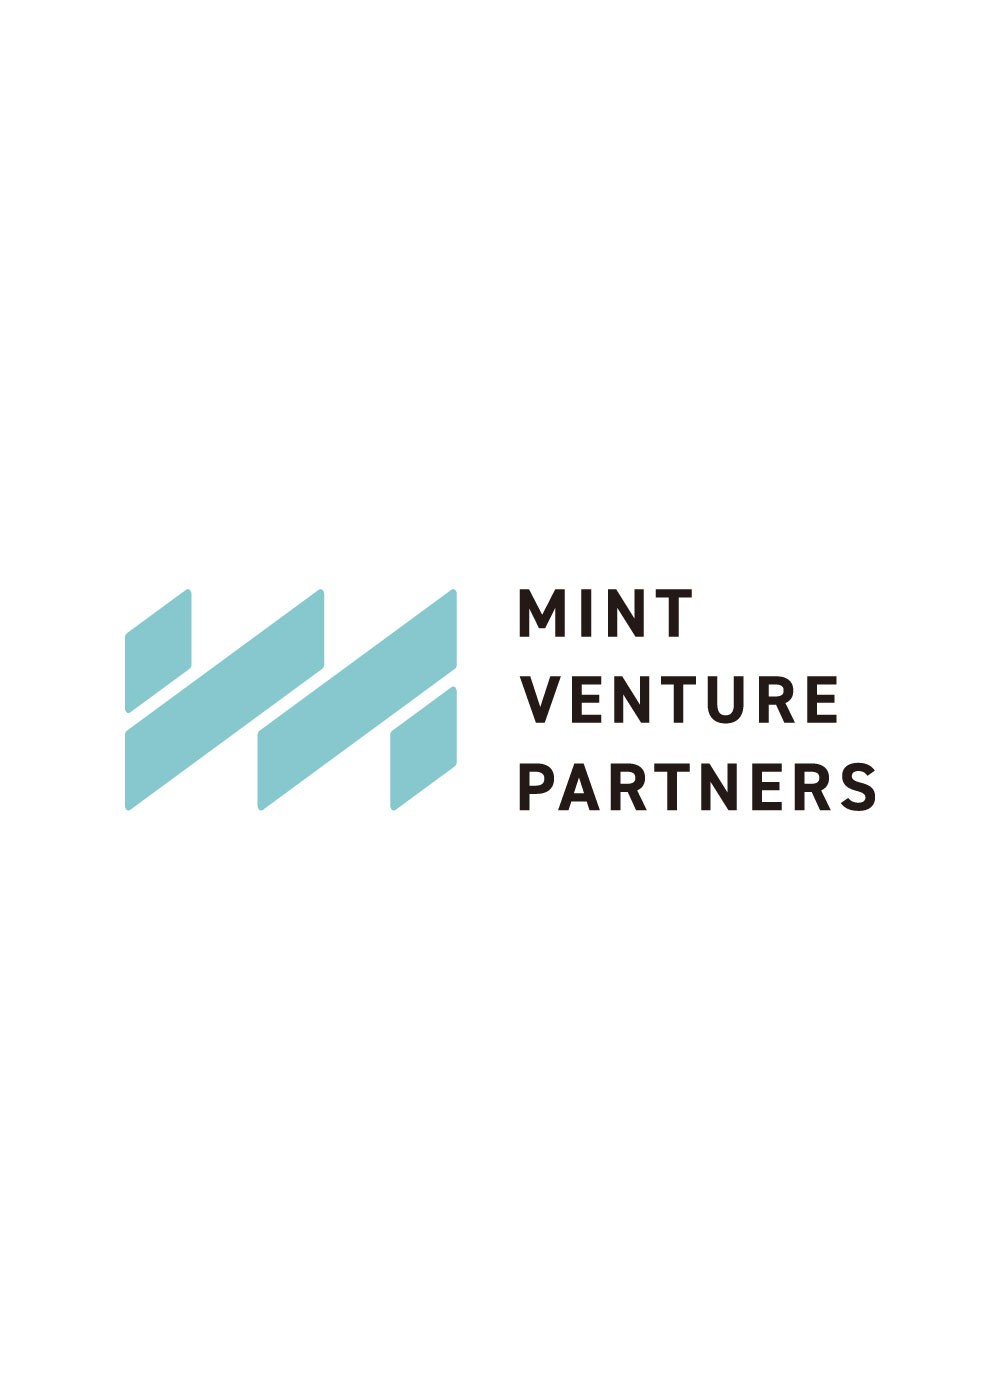 MInt Venture Partners